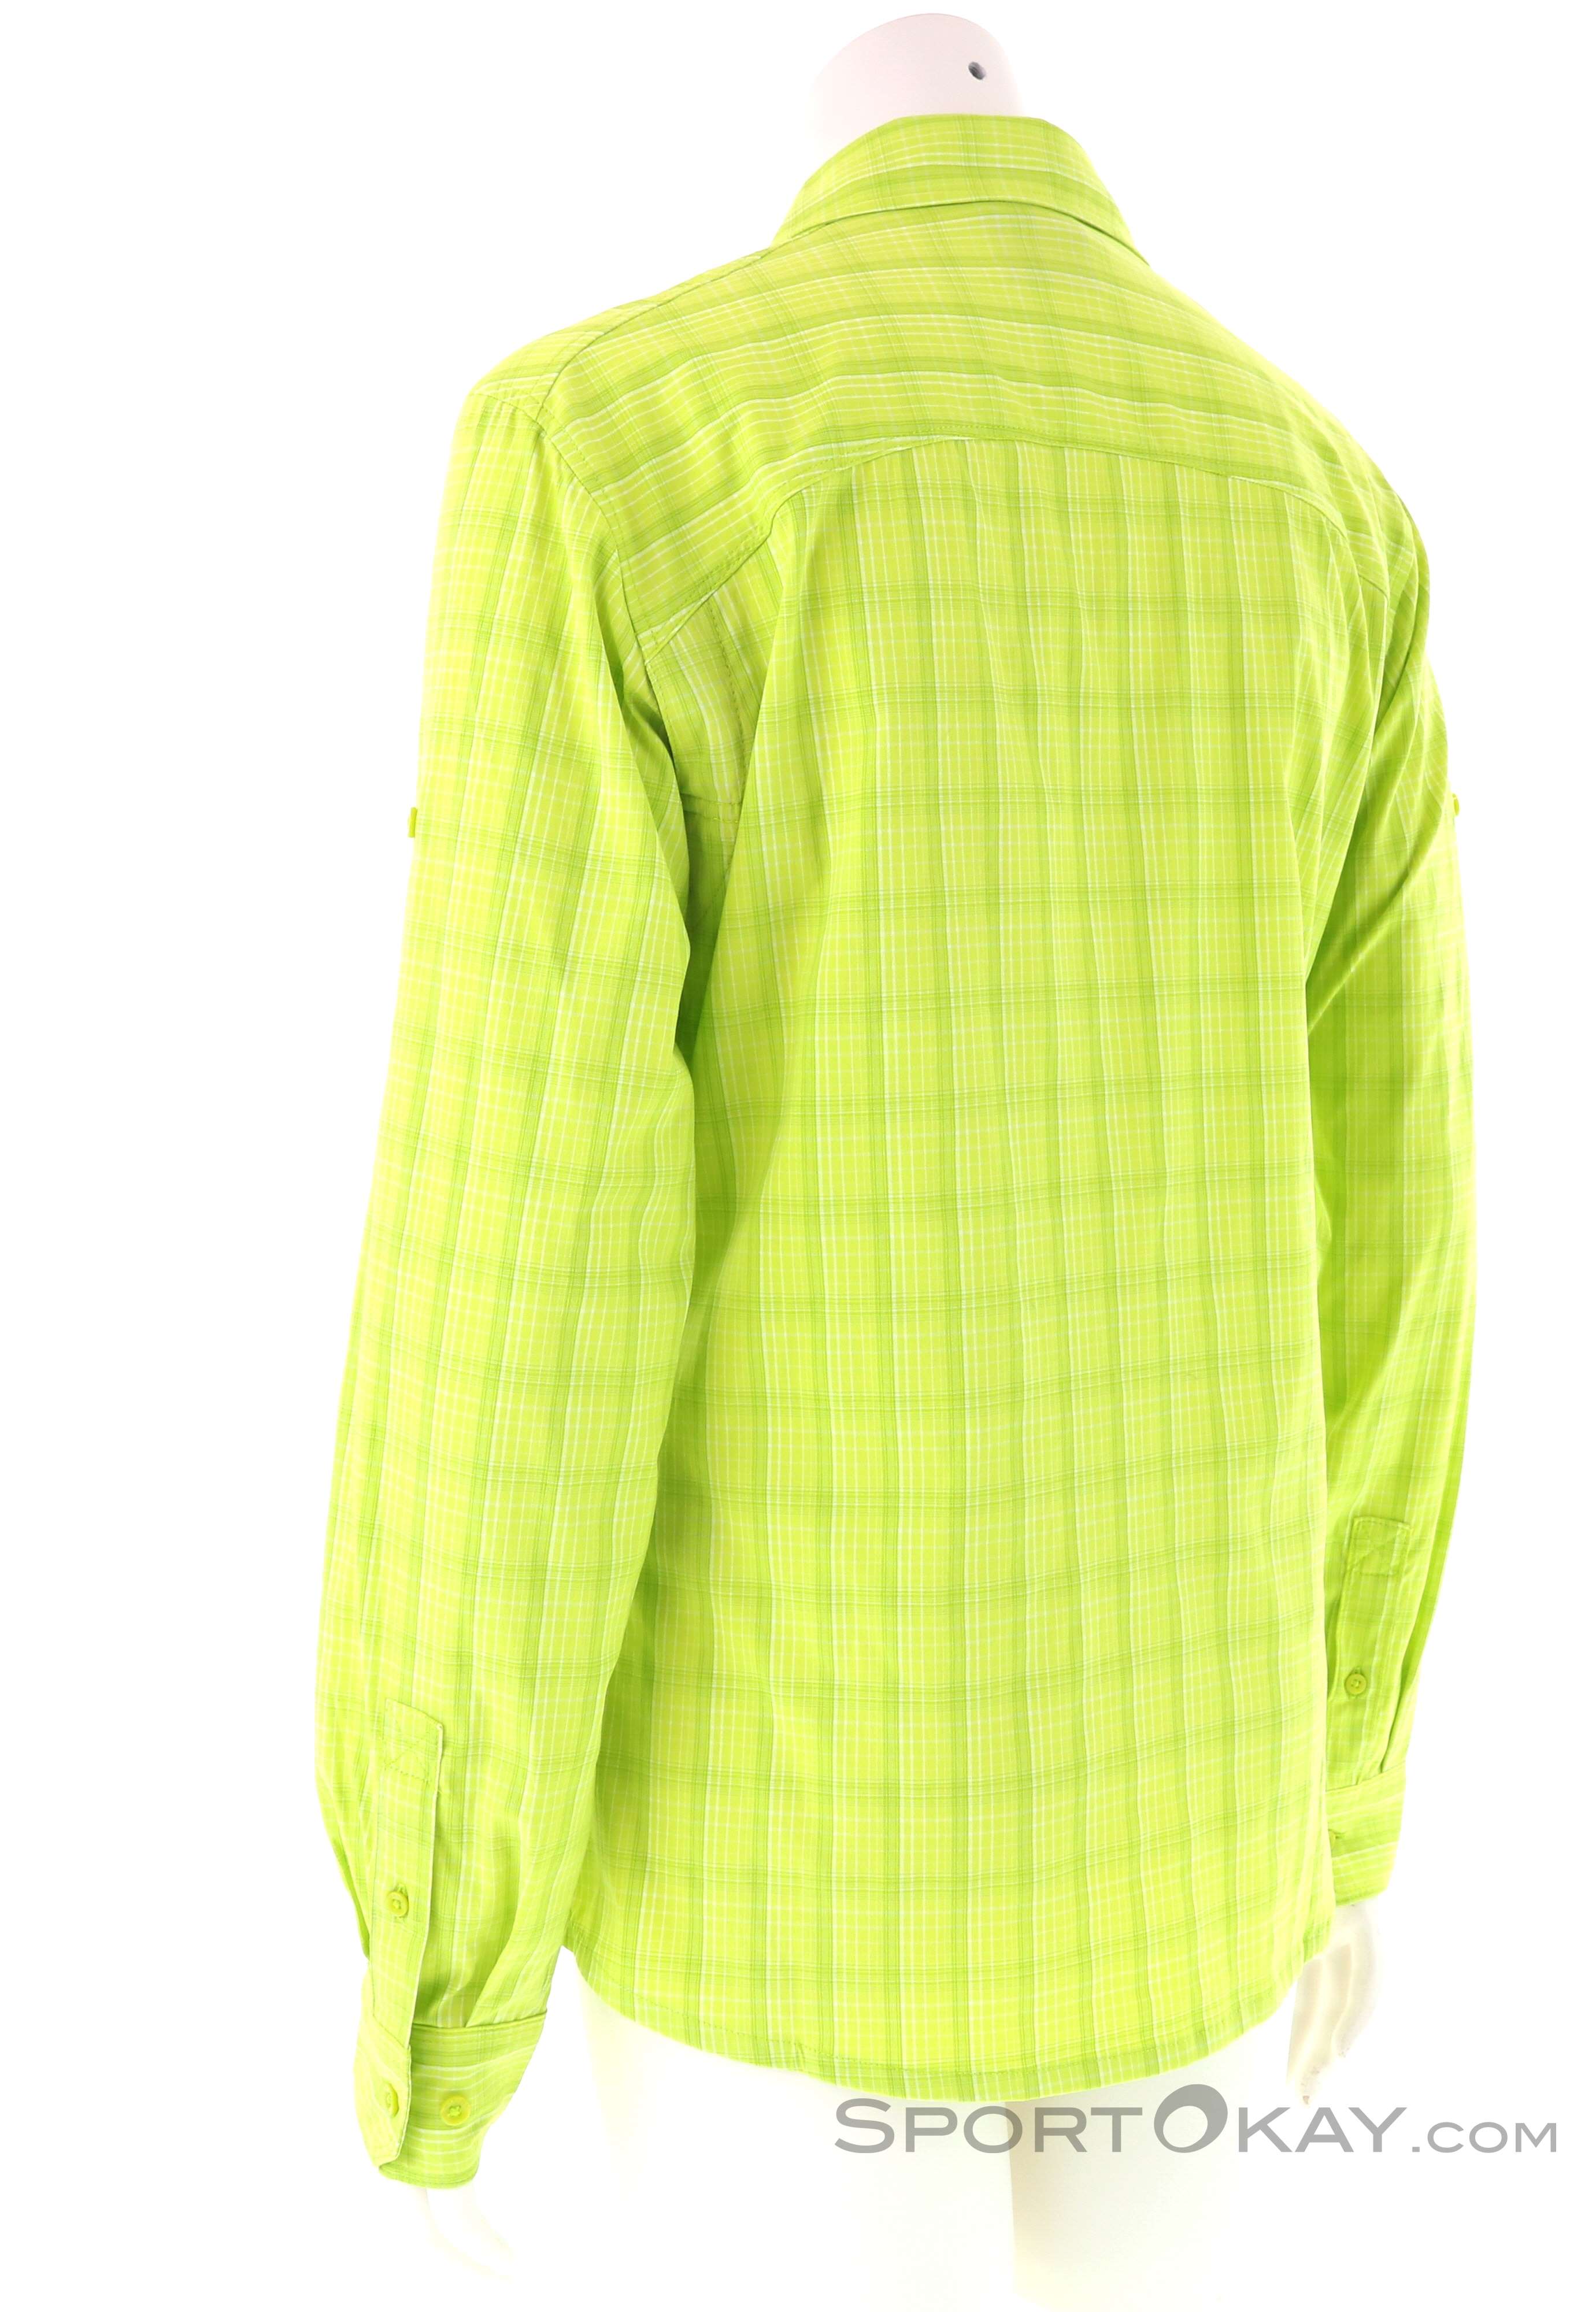 Wolfskin - - Outdoor Shirts & - Jack Hemden Alle - Bluse Centaura Flex Damen Outdoorbekleidung